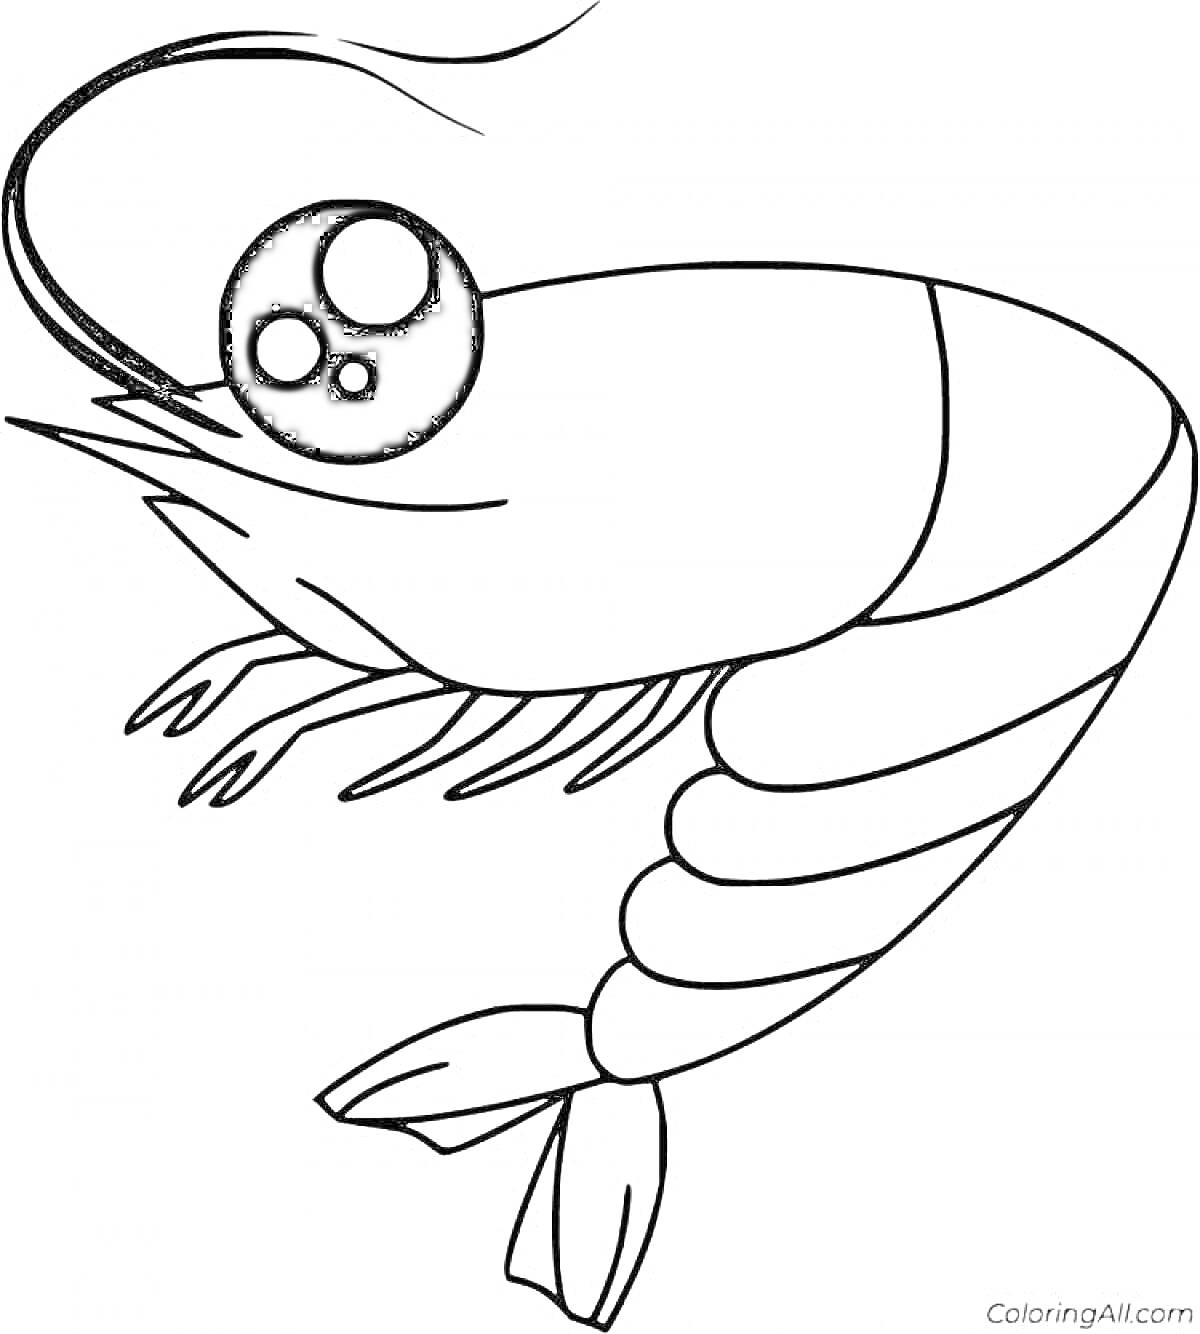 Раскраска Раскраска креветка с большими глазами, усами, лапами и хвостом